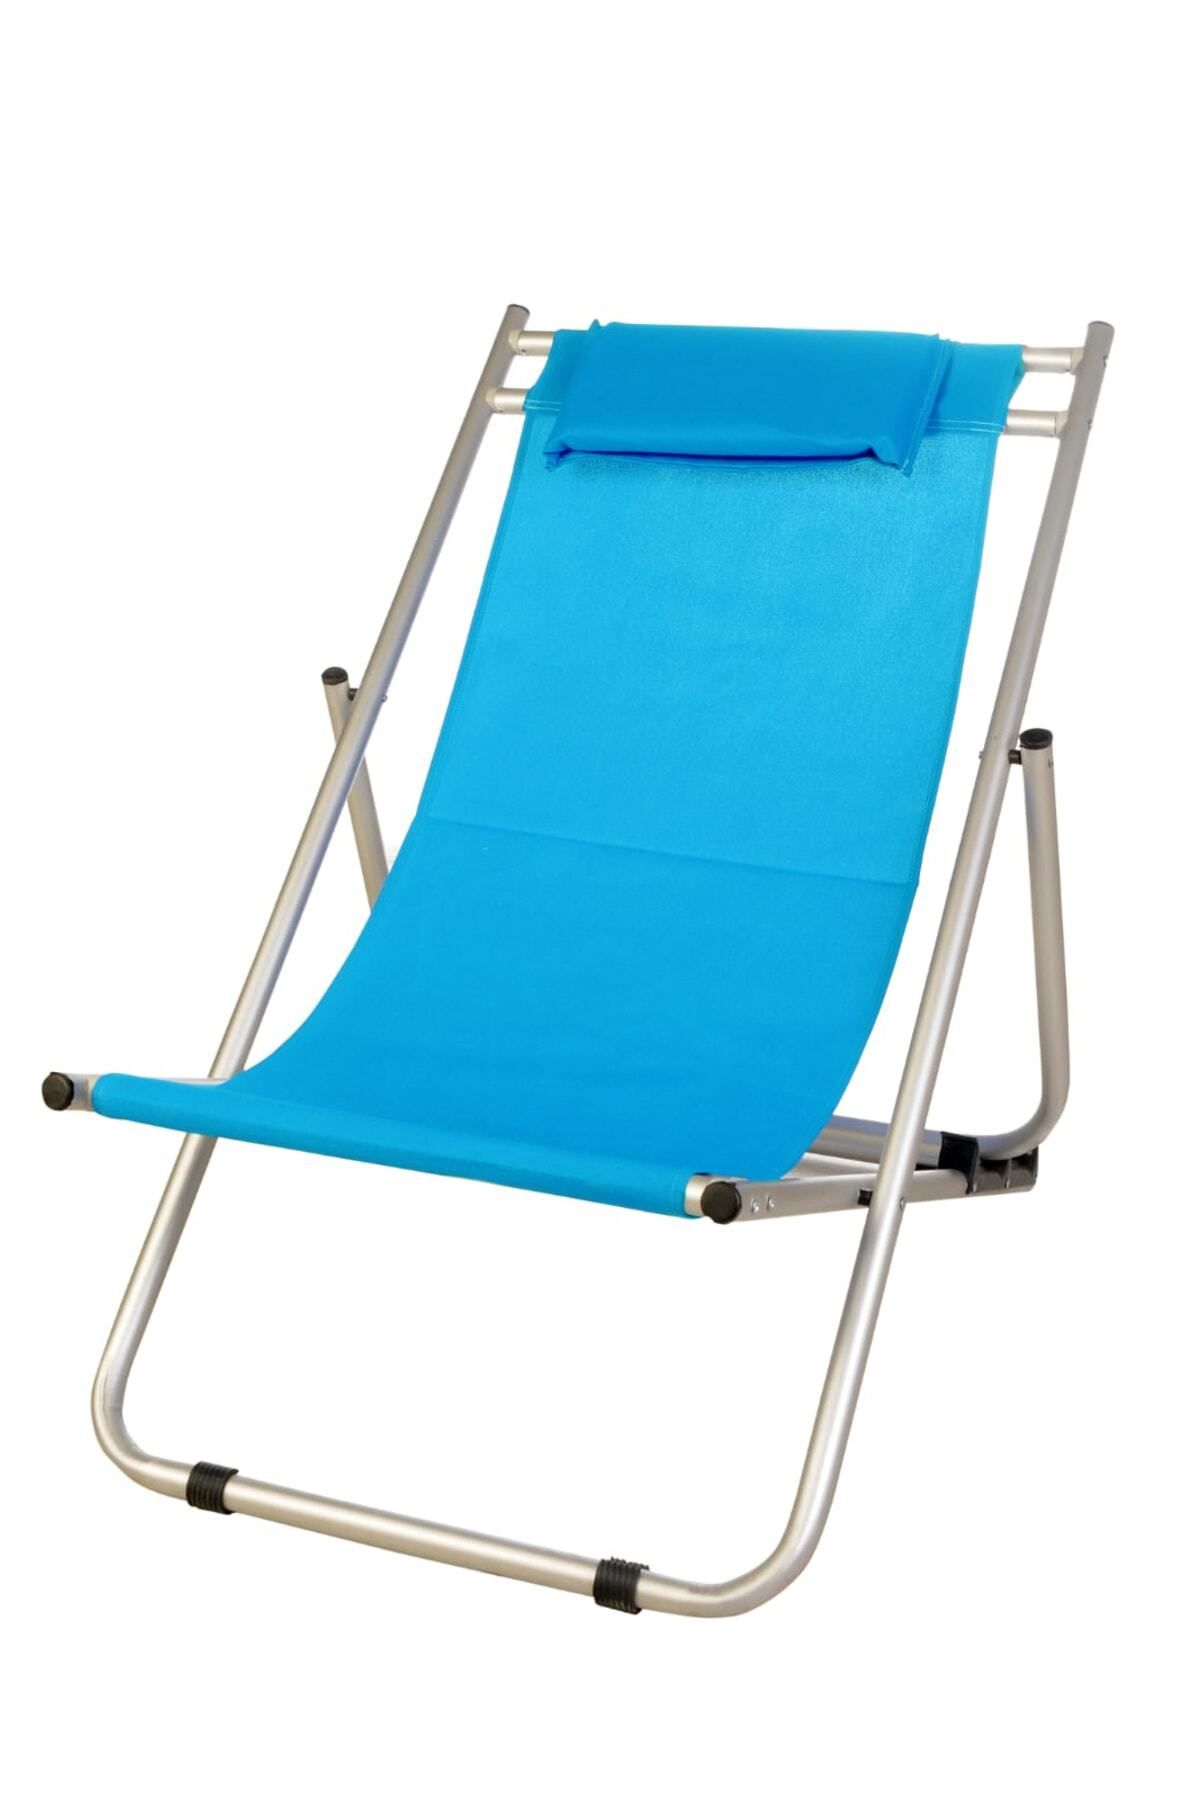 teknotrust Lacivert Katlanır Kademeli Şezlong Katlanır Sandalye Katlanır Şezlong Mavi Modern Alüminyum